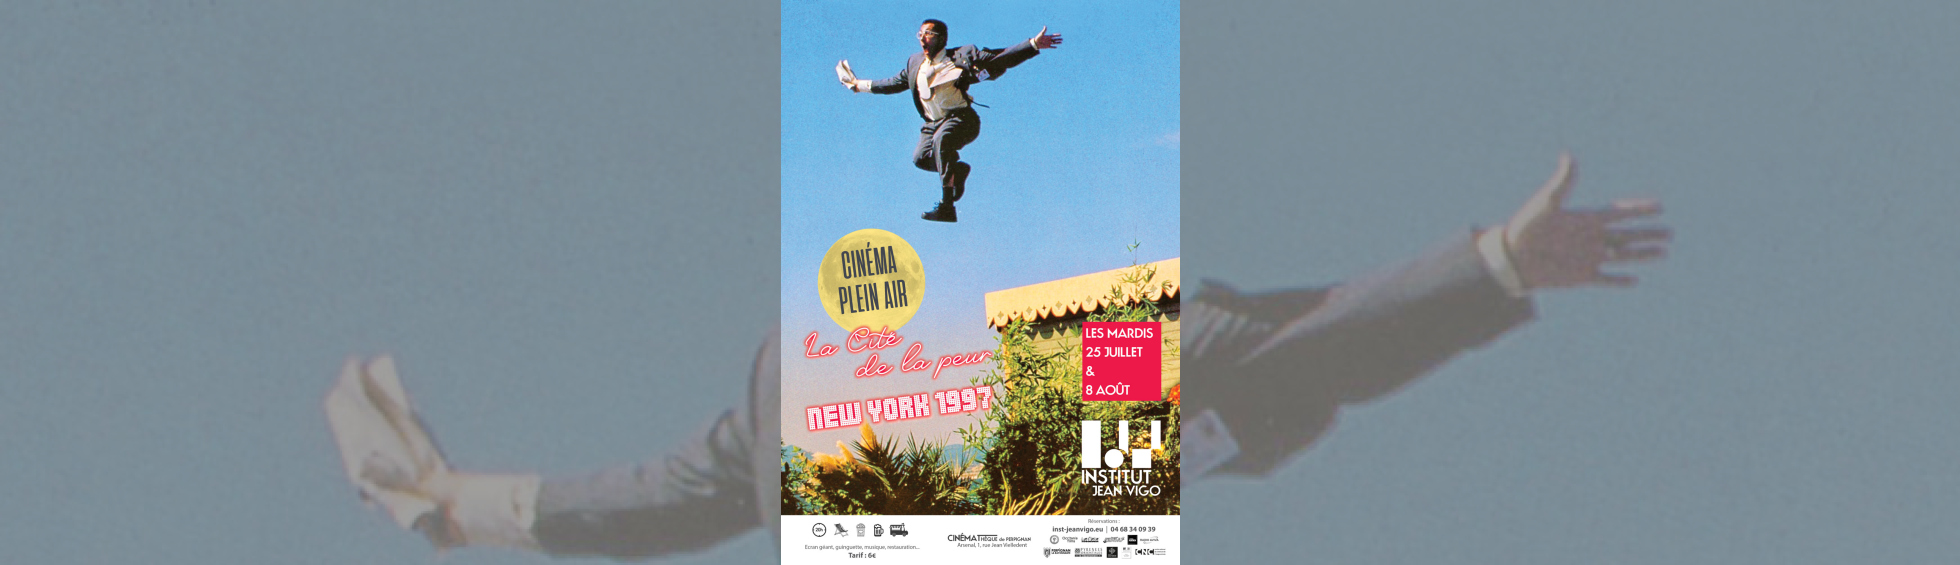 Cinéma en plein air - photo couleur homme qui saute en l'air